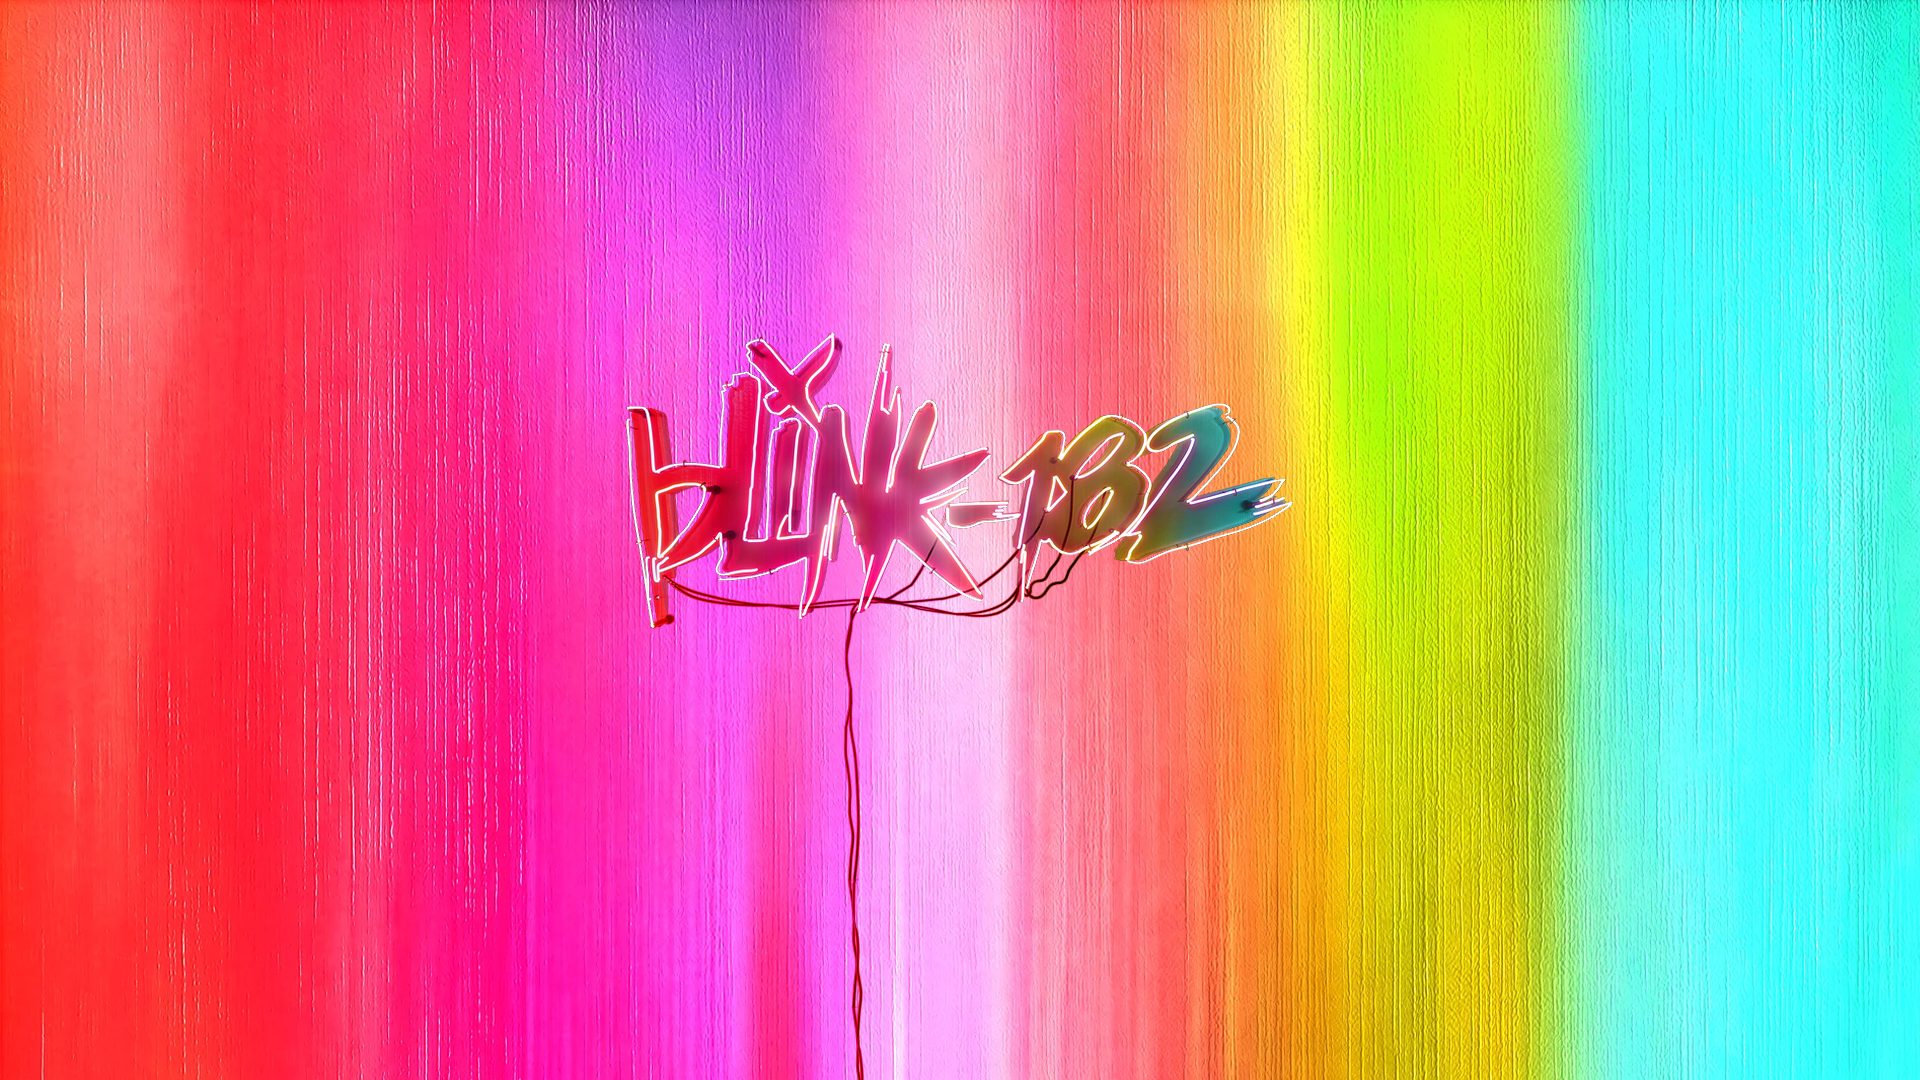 blink-182 - blink-182 - Nine, piste par piste blink 182 nine